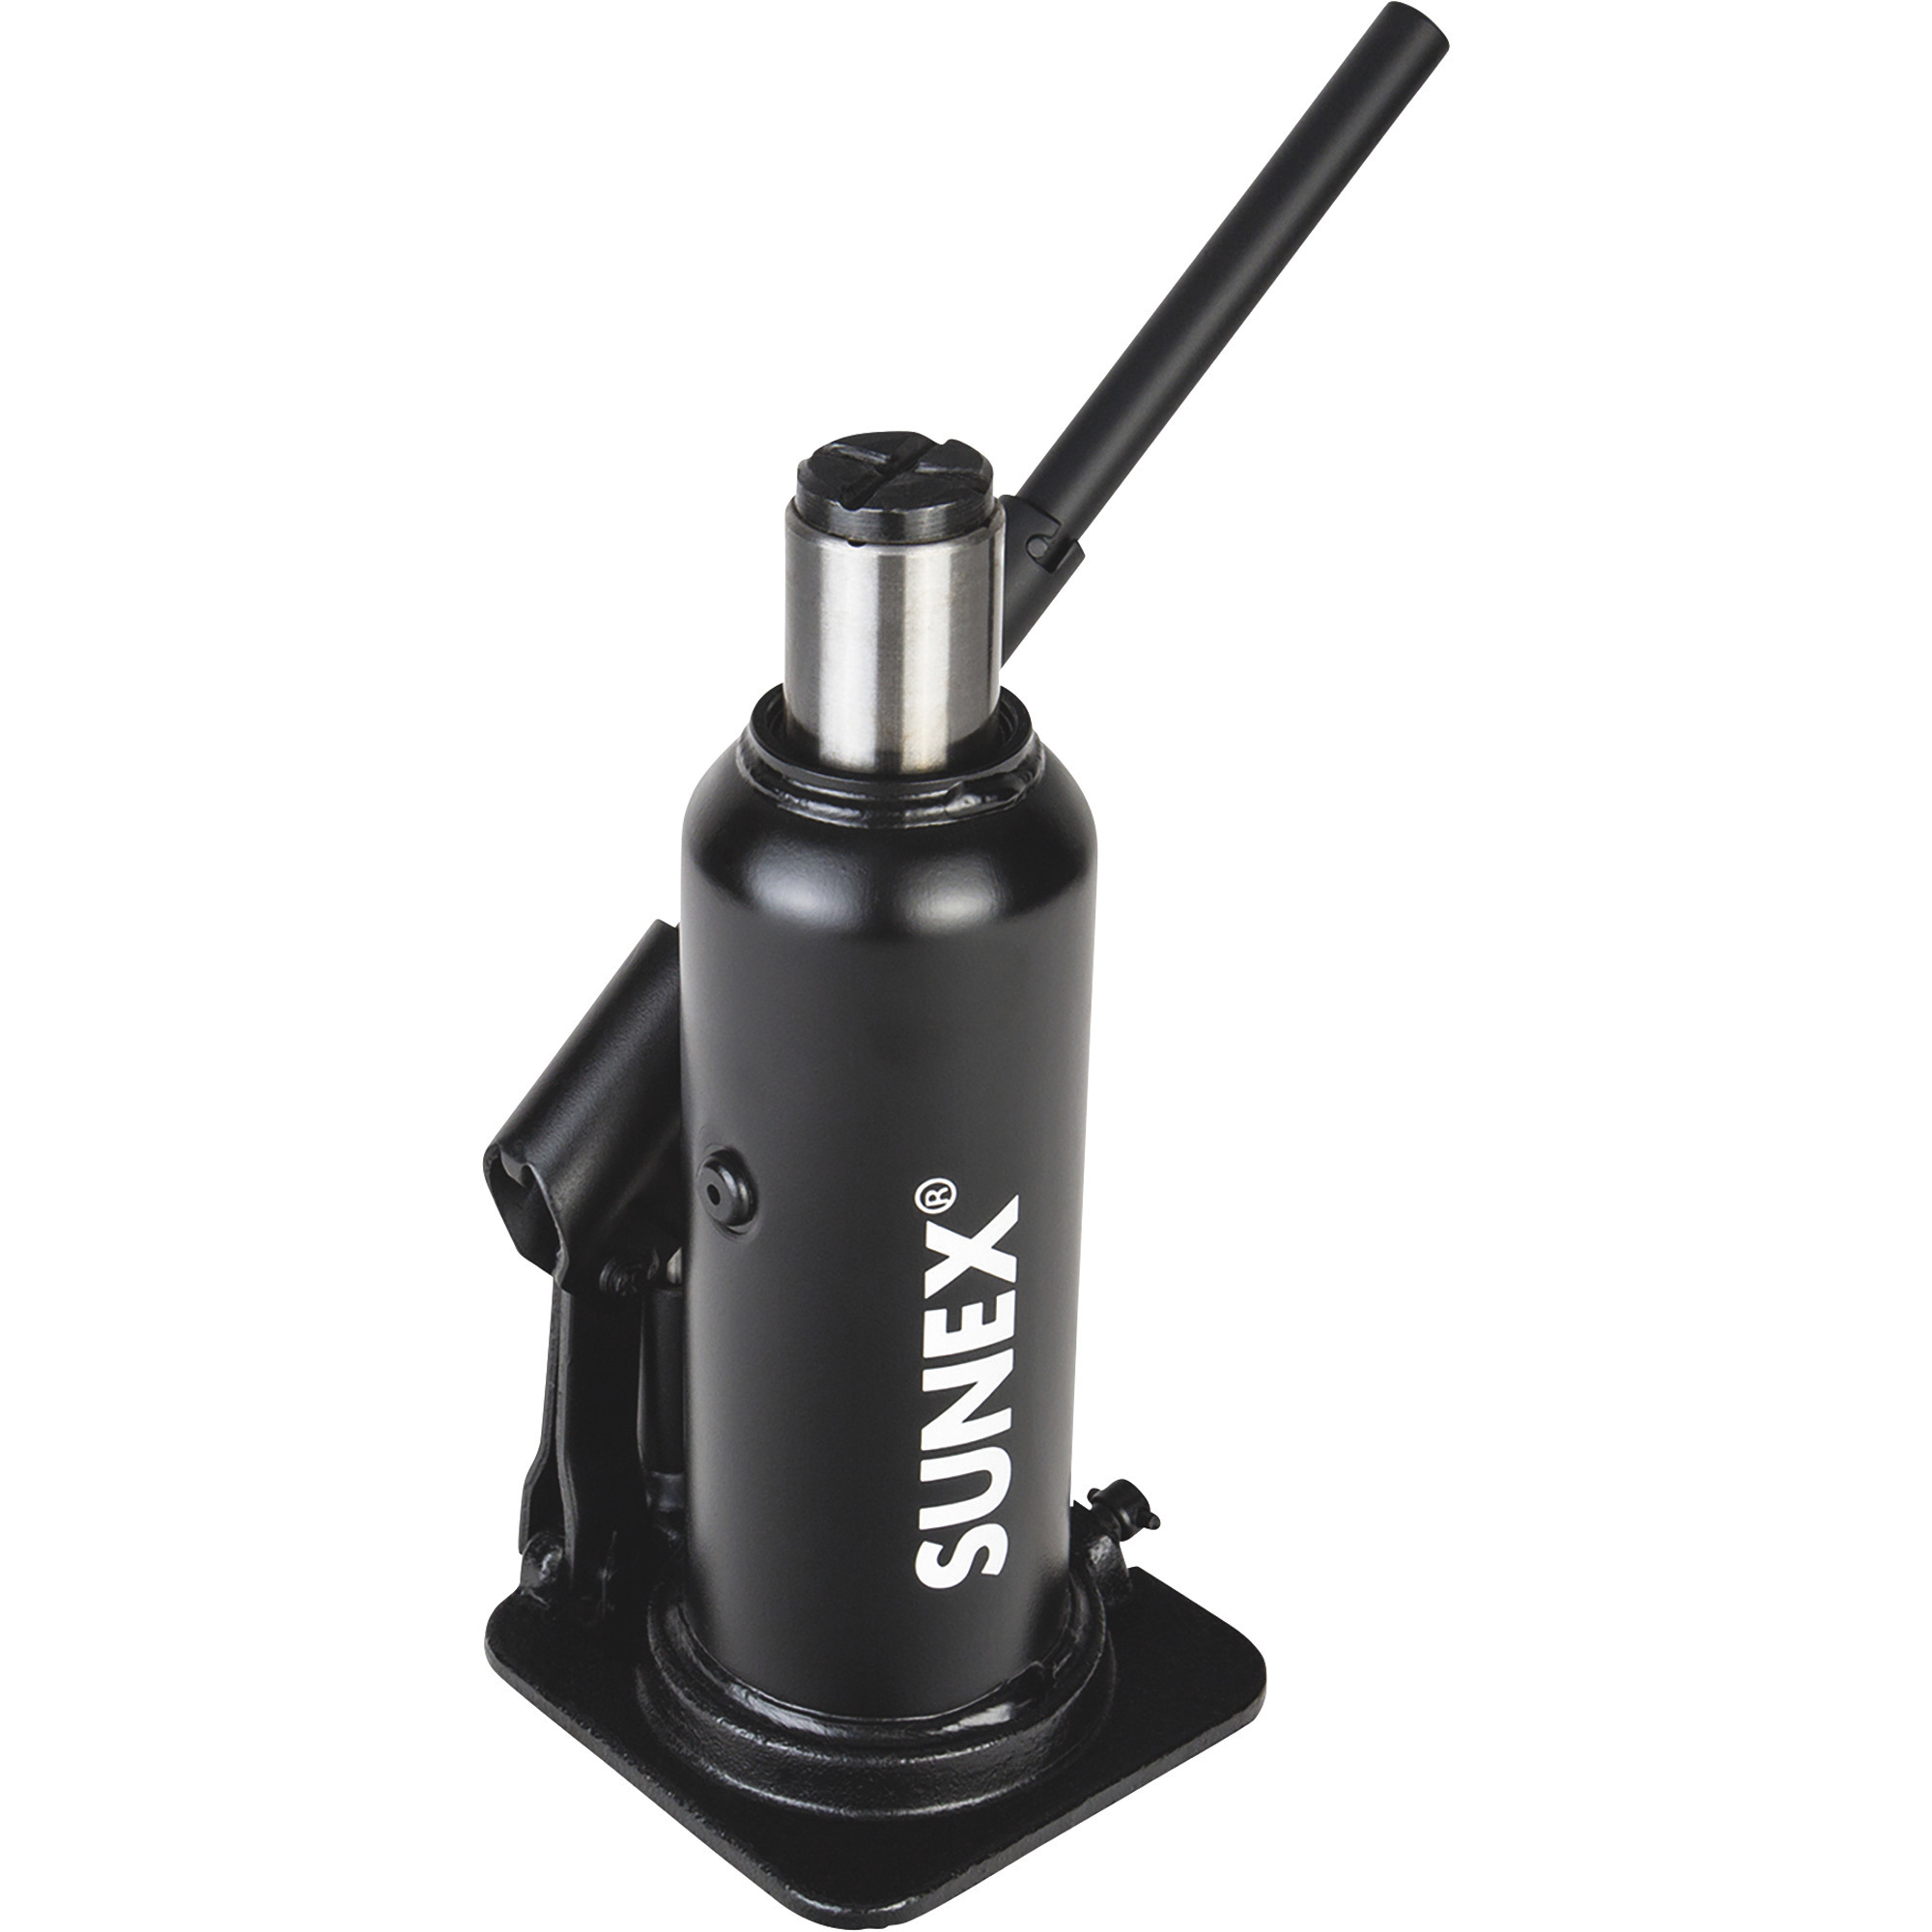 Sunex Bottle Jack, 8-Ton Capacity, Model 4408